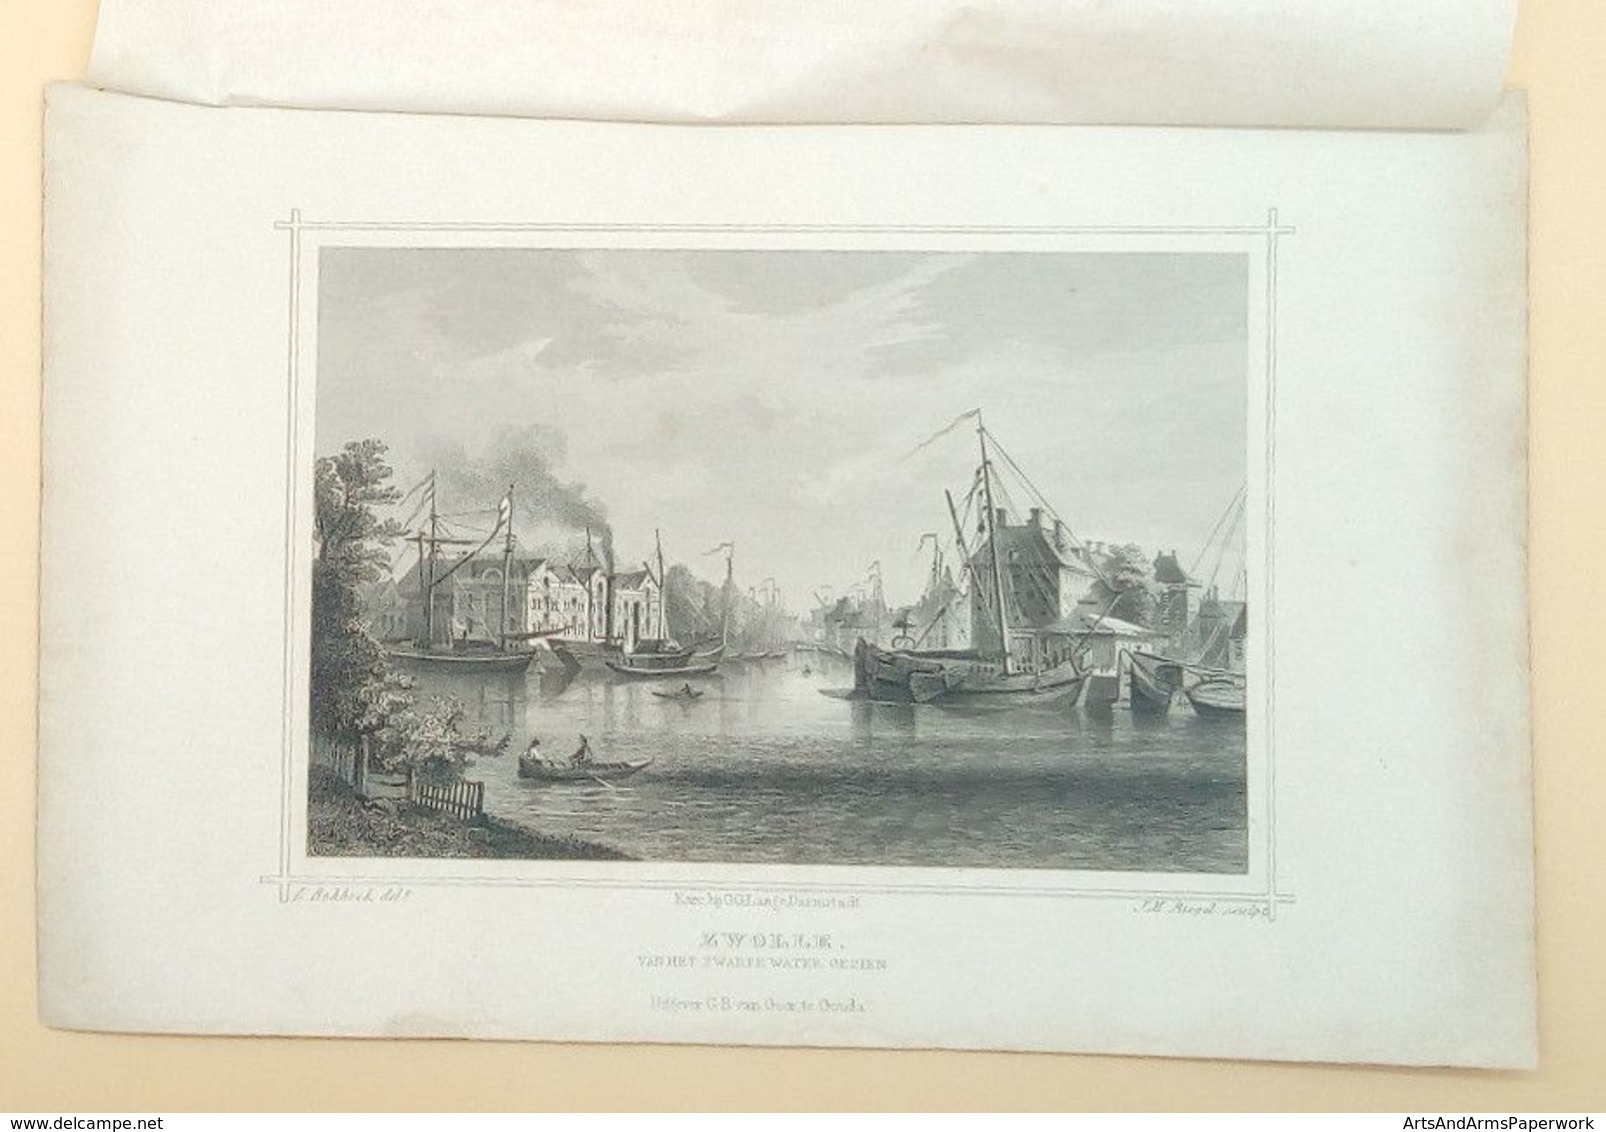 Zwolle, Van Het Zwarte Water Gezien 1858/ Zwolle (NL), Seen From The Black Water 1858. Rohbock, Riegel, OVERIJSSEL - Art